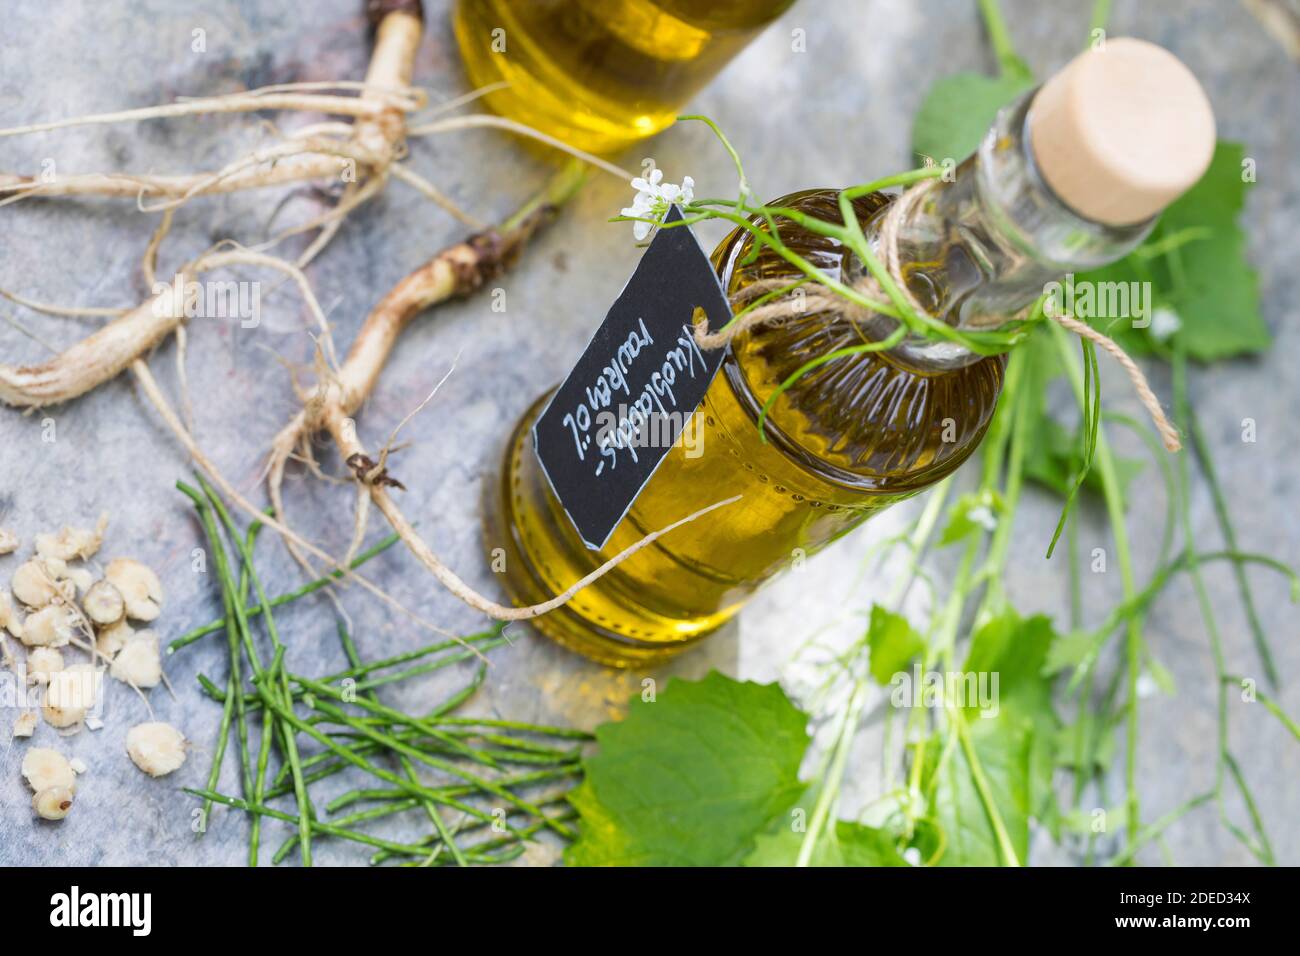 Senape all'aglio, aglio all'orlo, Jack-by-the-Hedge (Alliaria petiolata), olio d'aglio Hedge, Germania Foto Stock